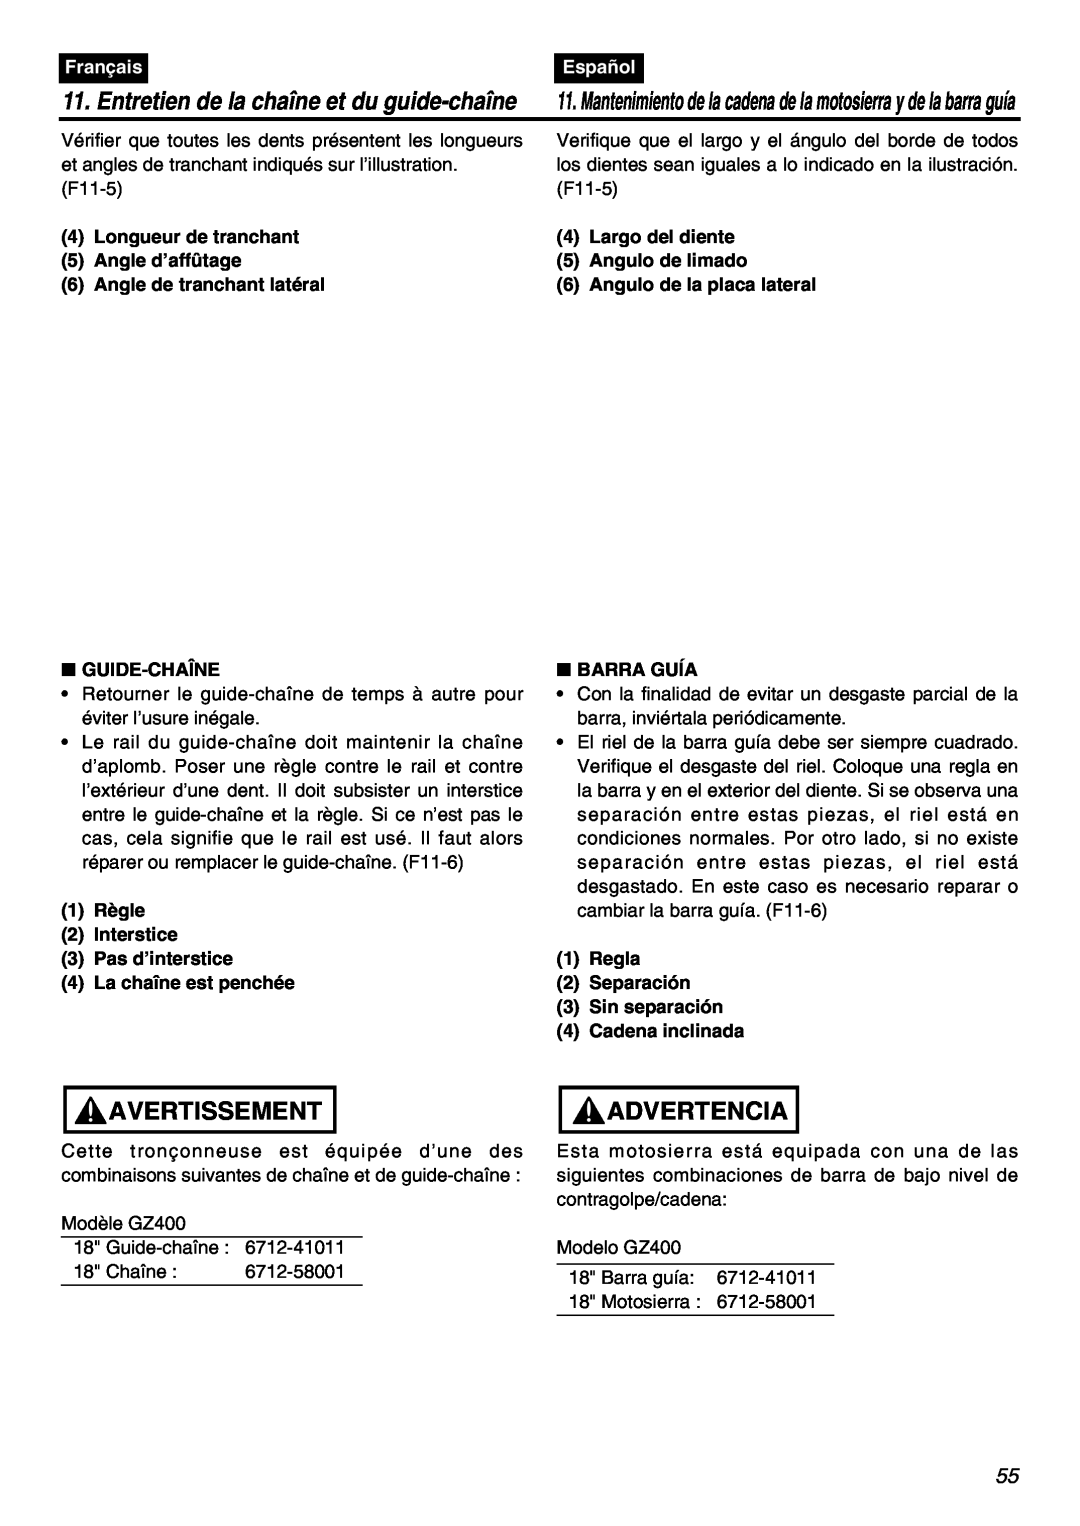 RedMax GZ400 manual Avertissement, Advertencia, Entretien de la chaîne et du guide-chaîne, Français, Español 